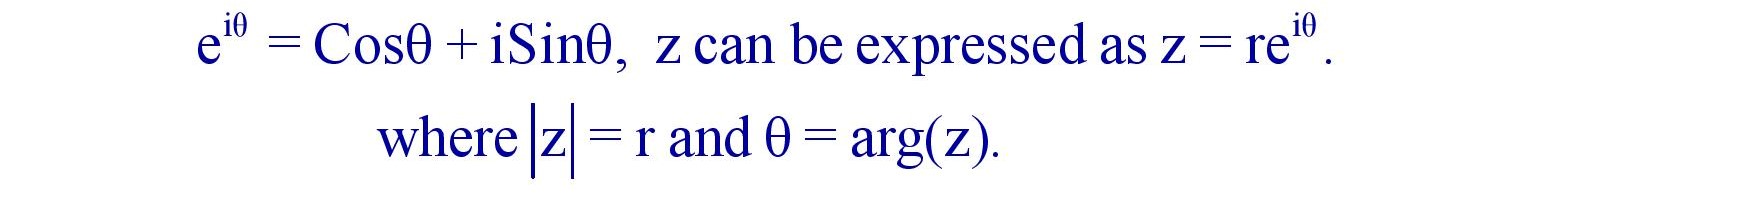 Eulerian Representation